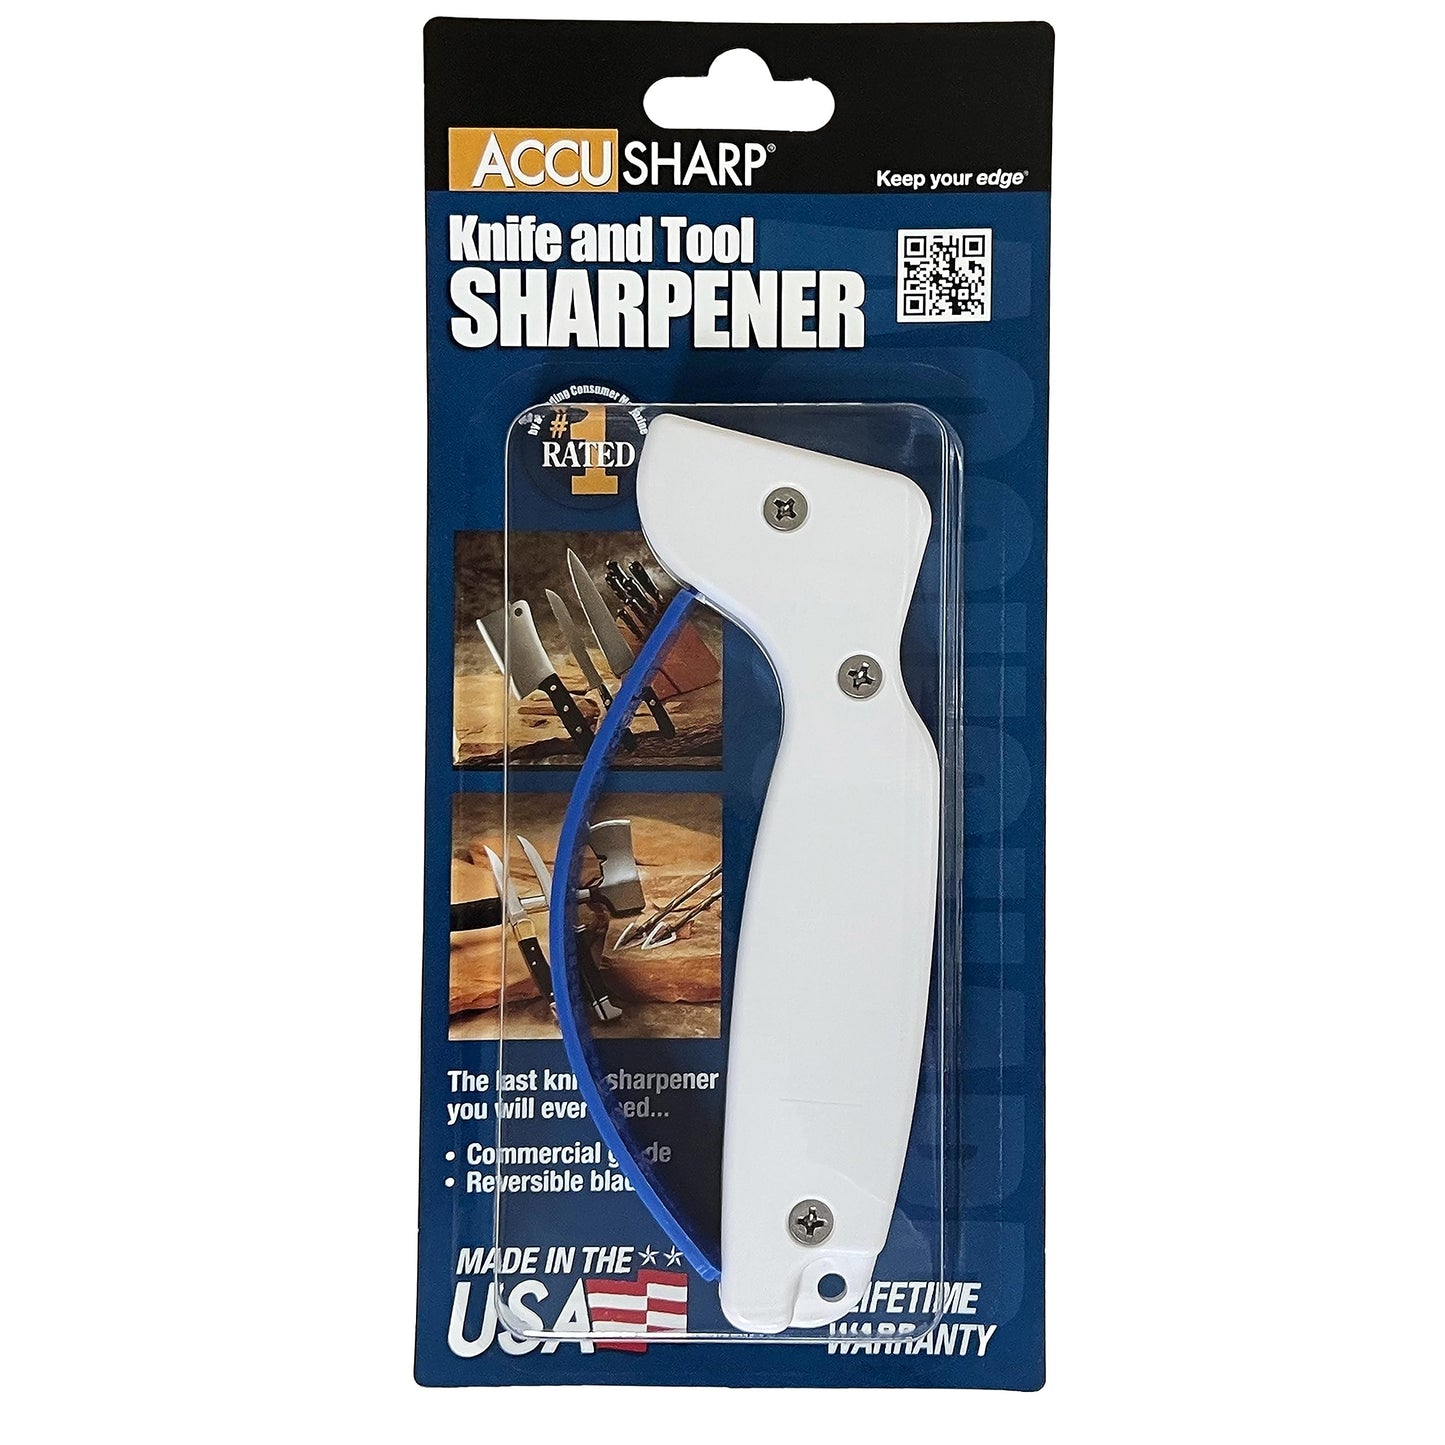 AccuSharp 001 Knife Sharpener